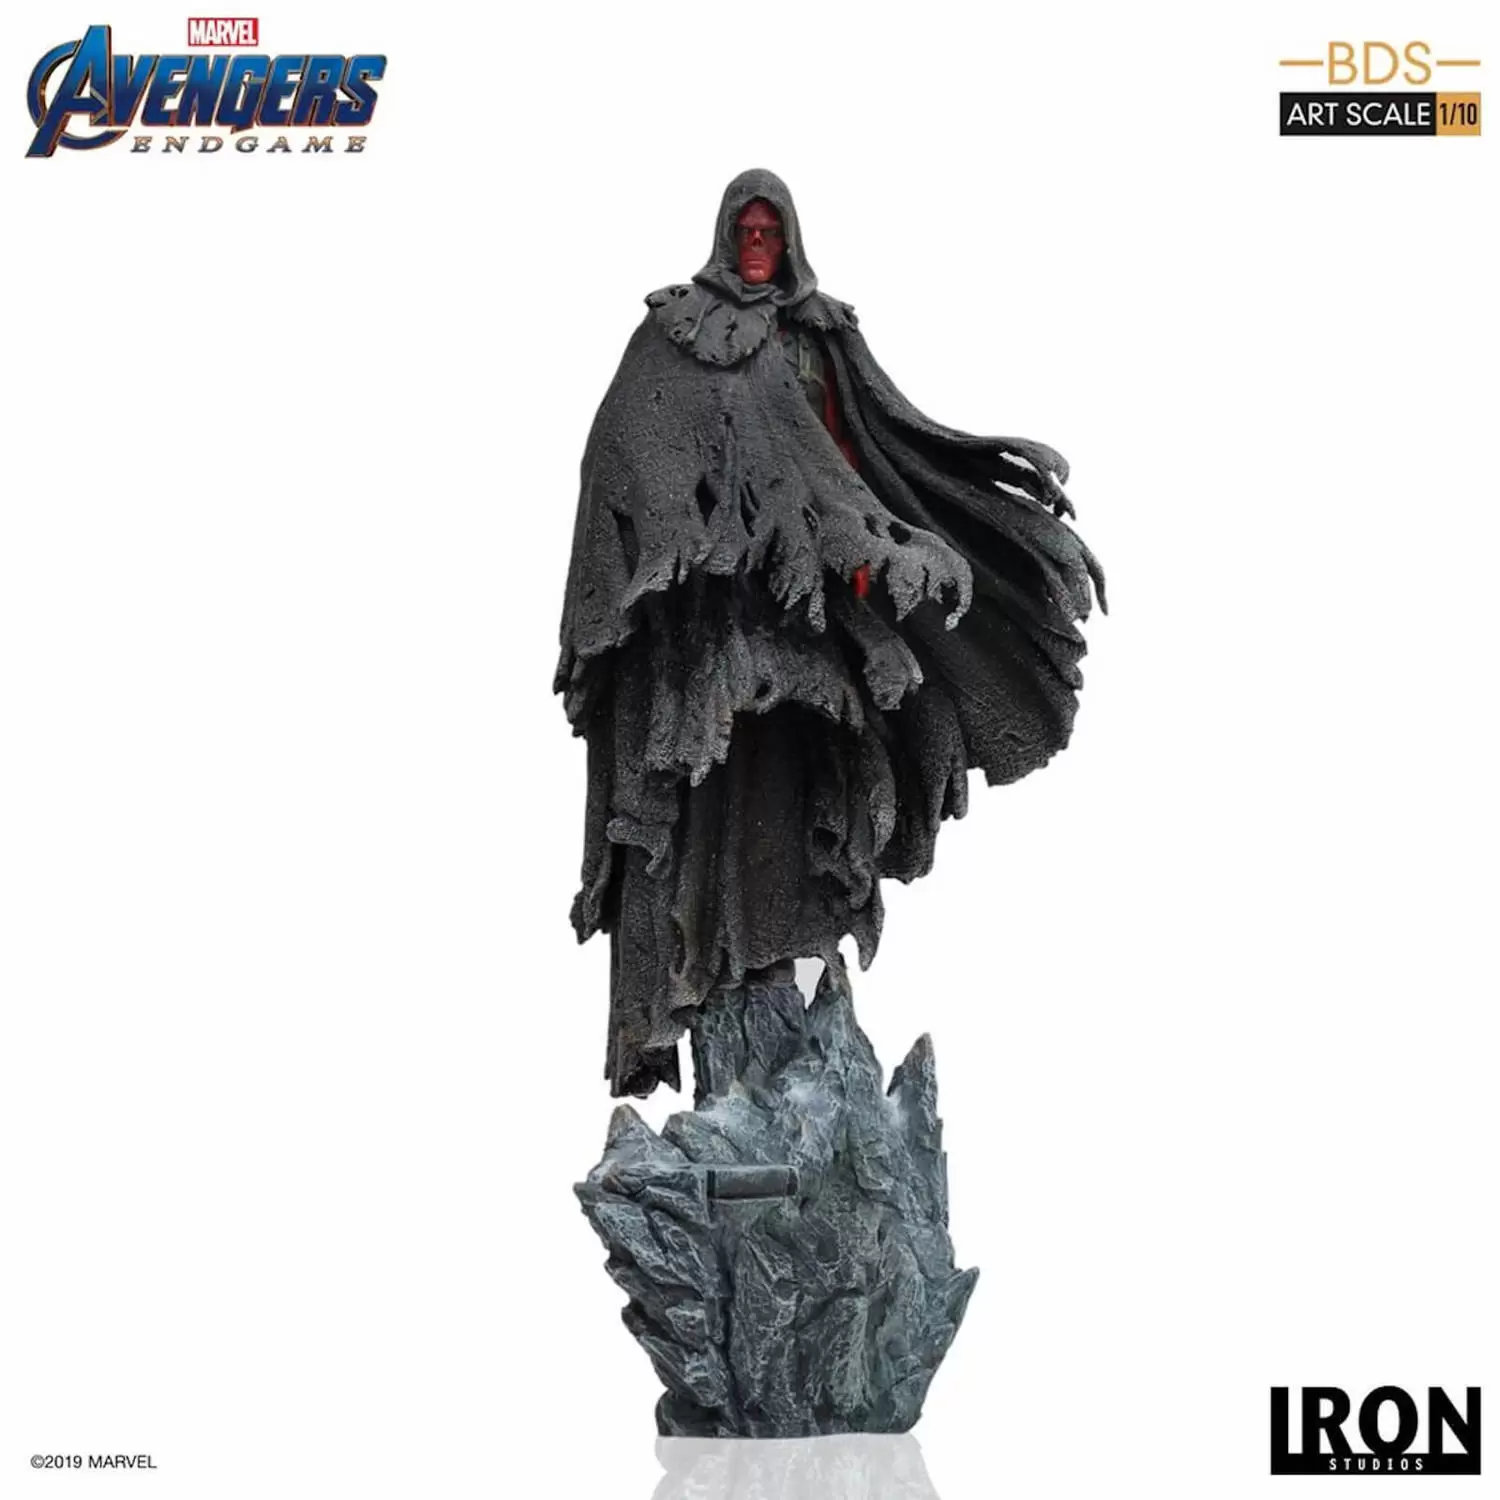 Iron Studios - Avengers: Endgame - Red Skull - BDS Art Scale